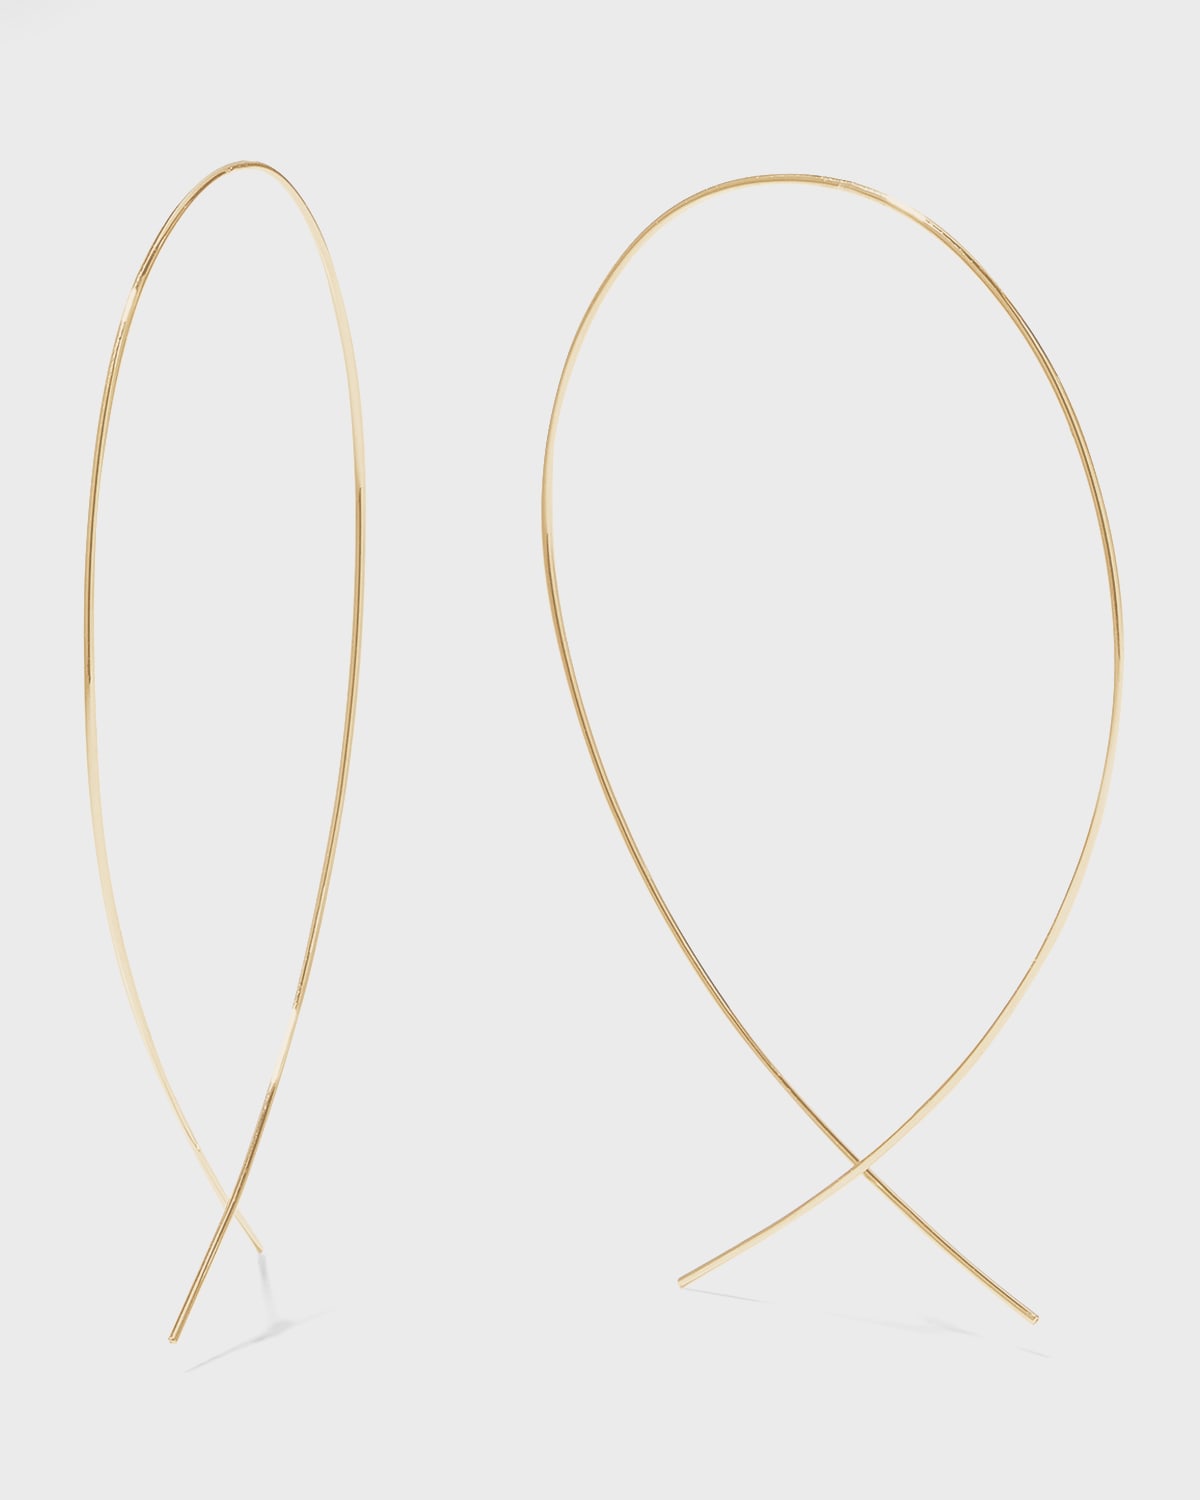 LANA Large Upside Down Hoop Earrings in 14K Gold